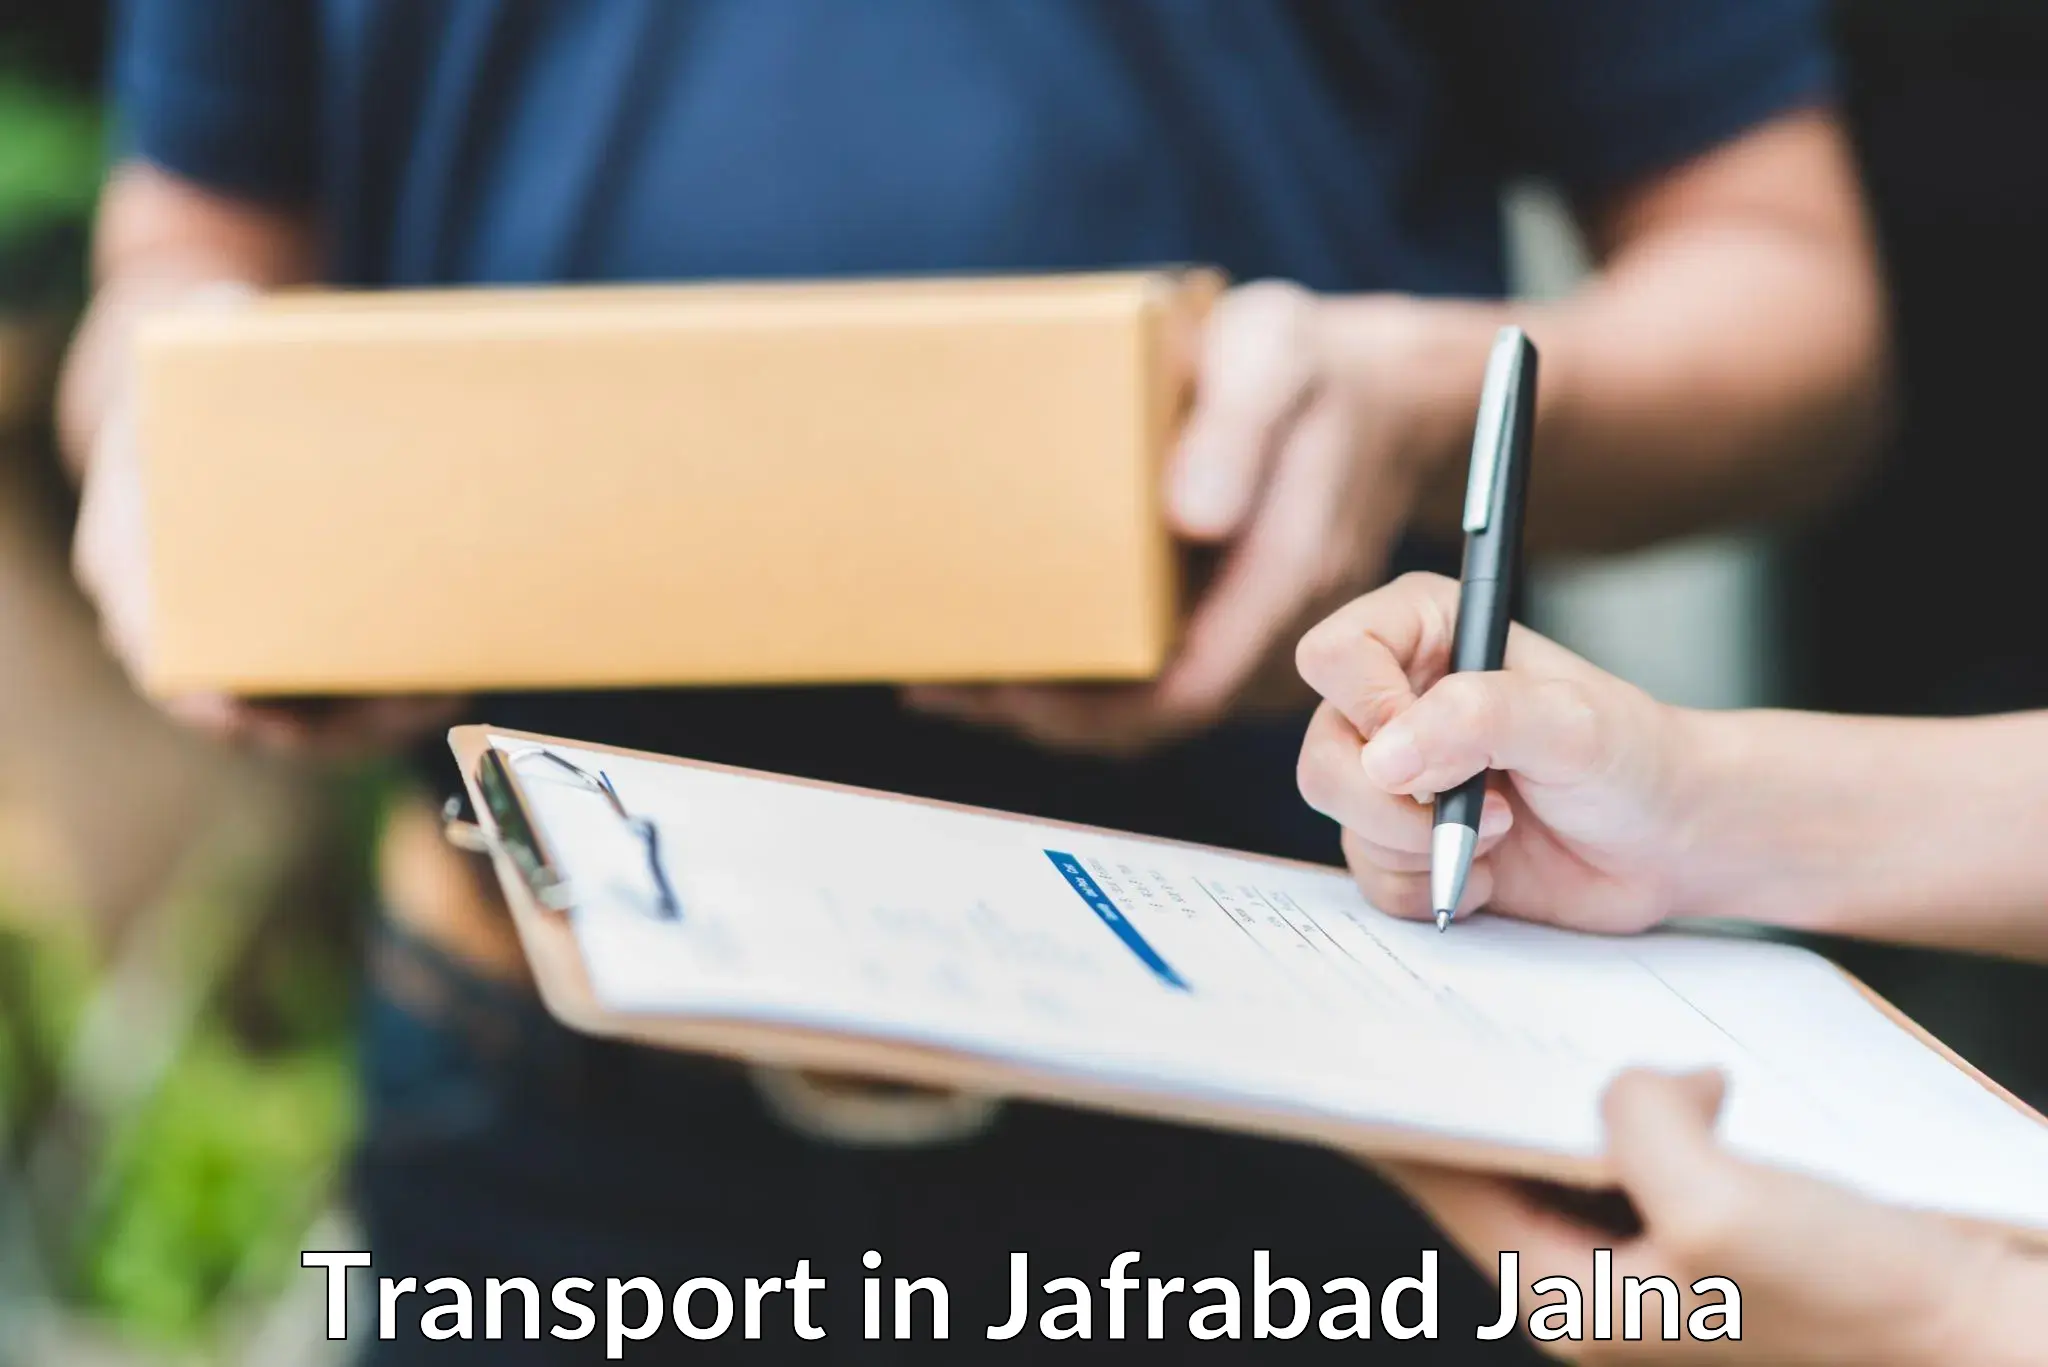 Online transport service in Jafrabad Jalna